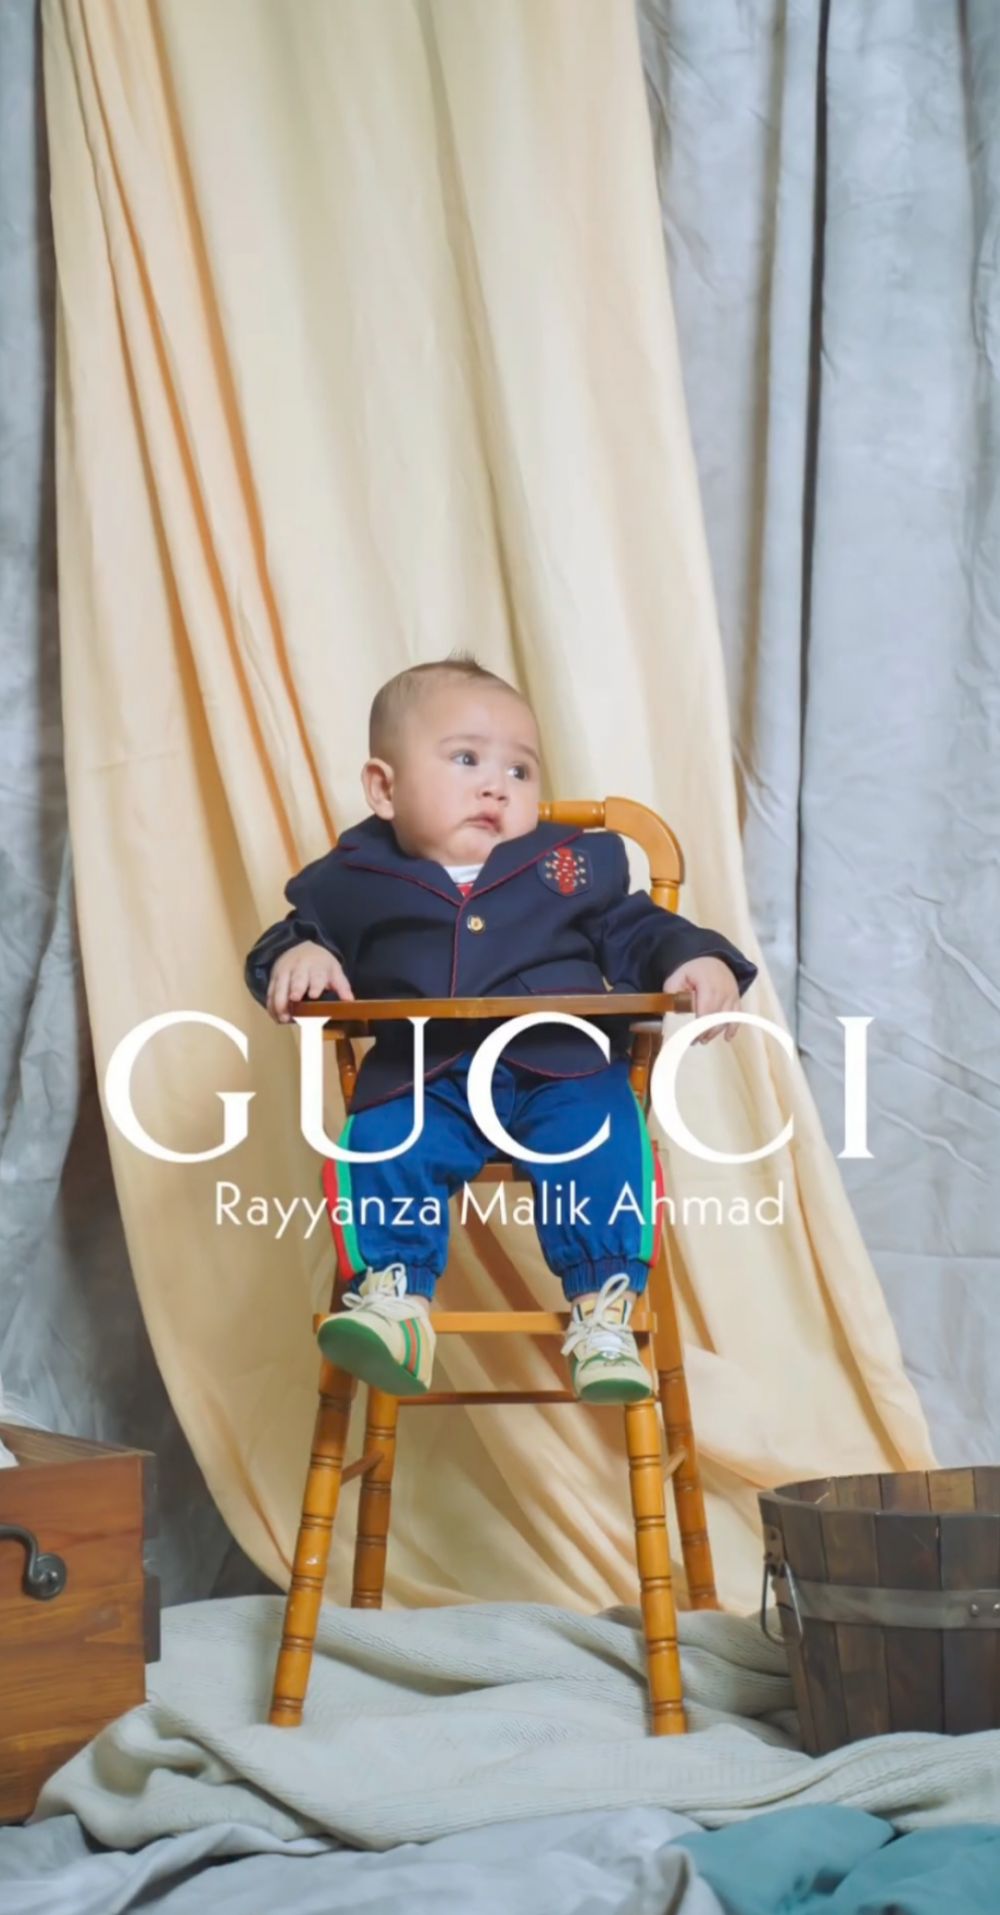 7 Gaya Rayyanza ikut supermodel challenge, bayi 'Sultan' menggemaskan